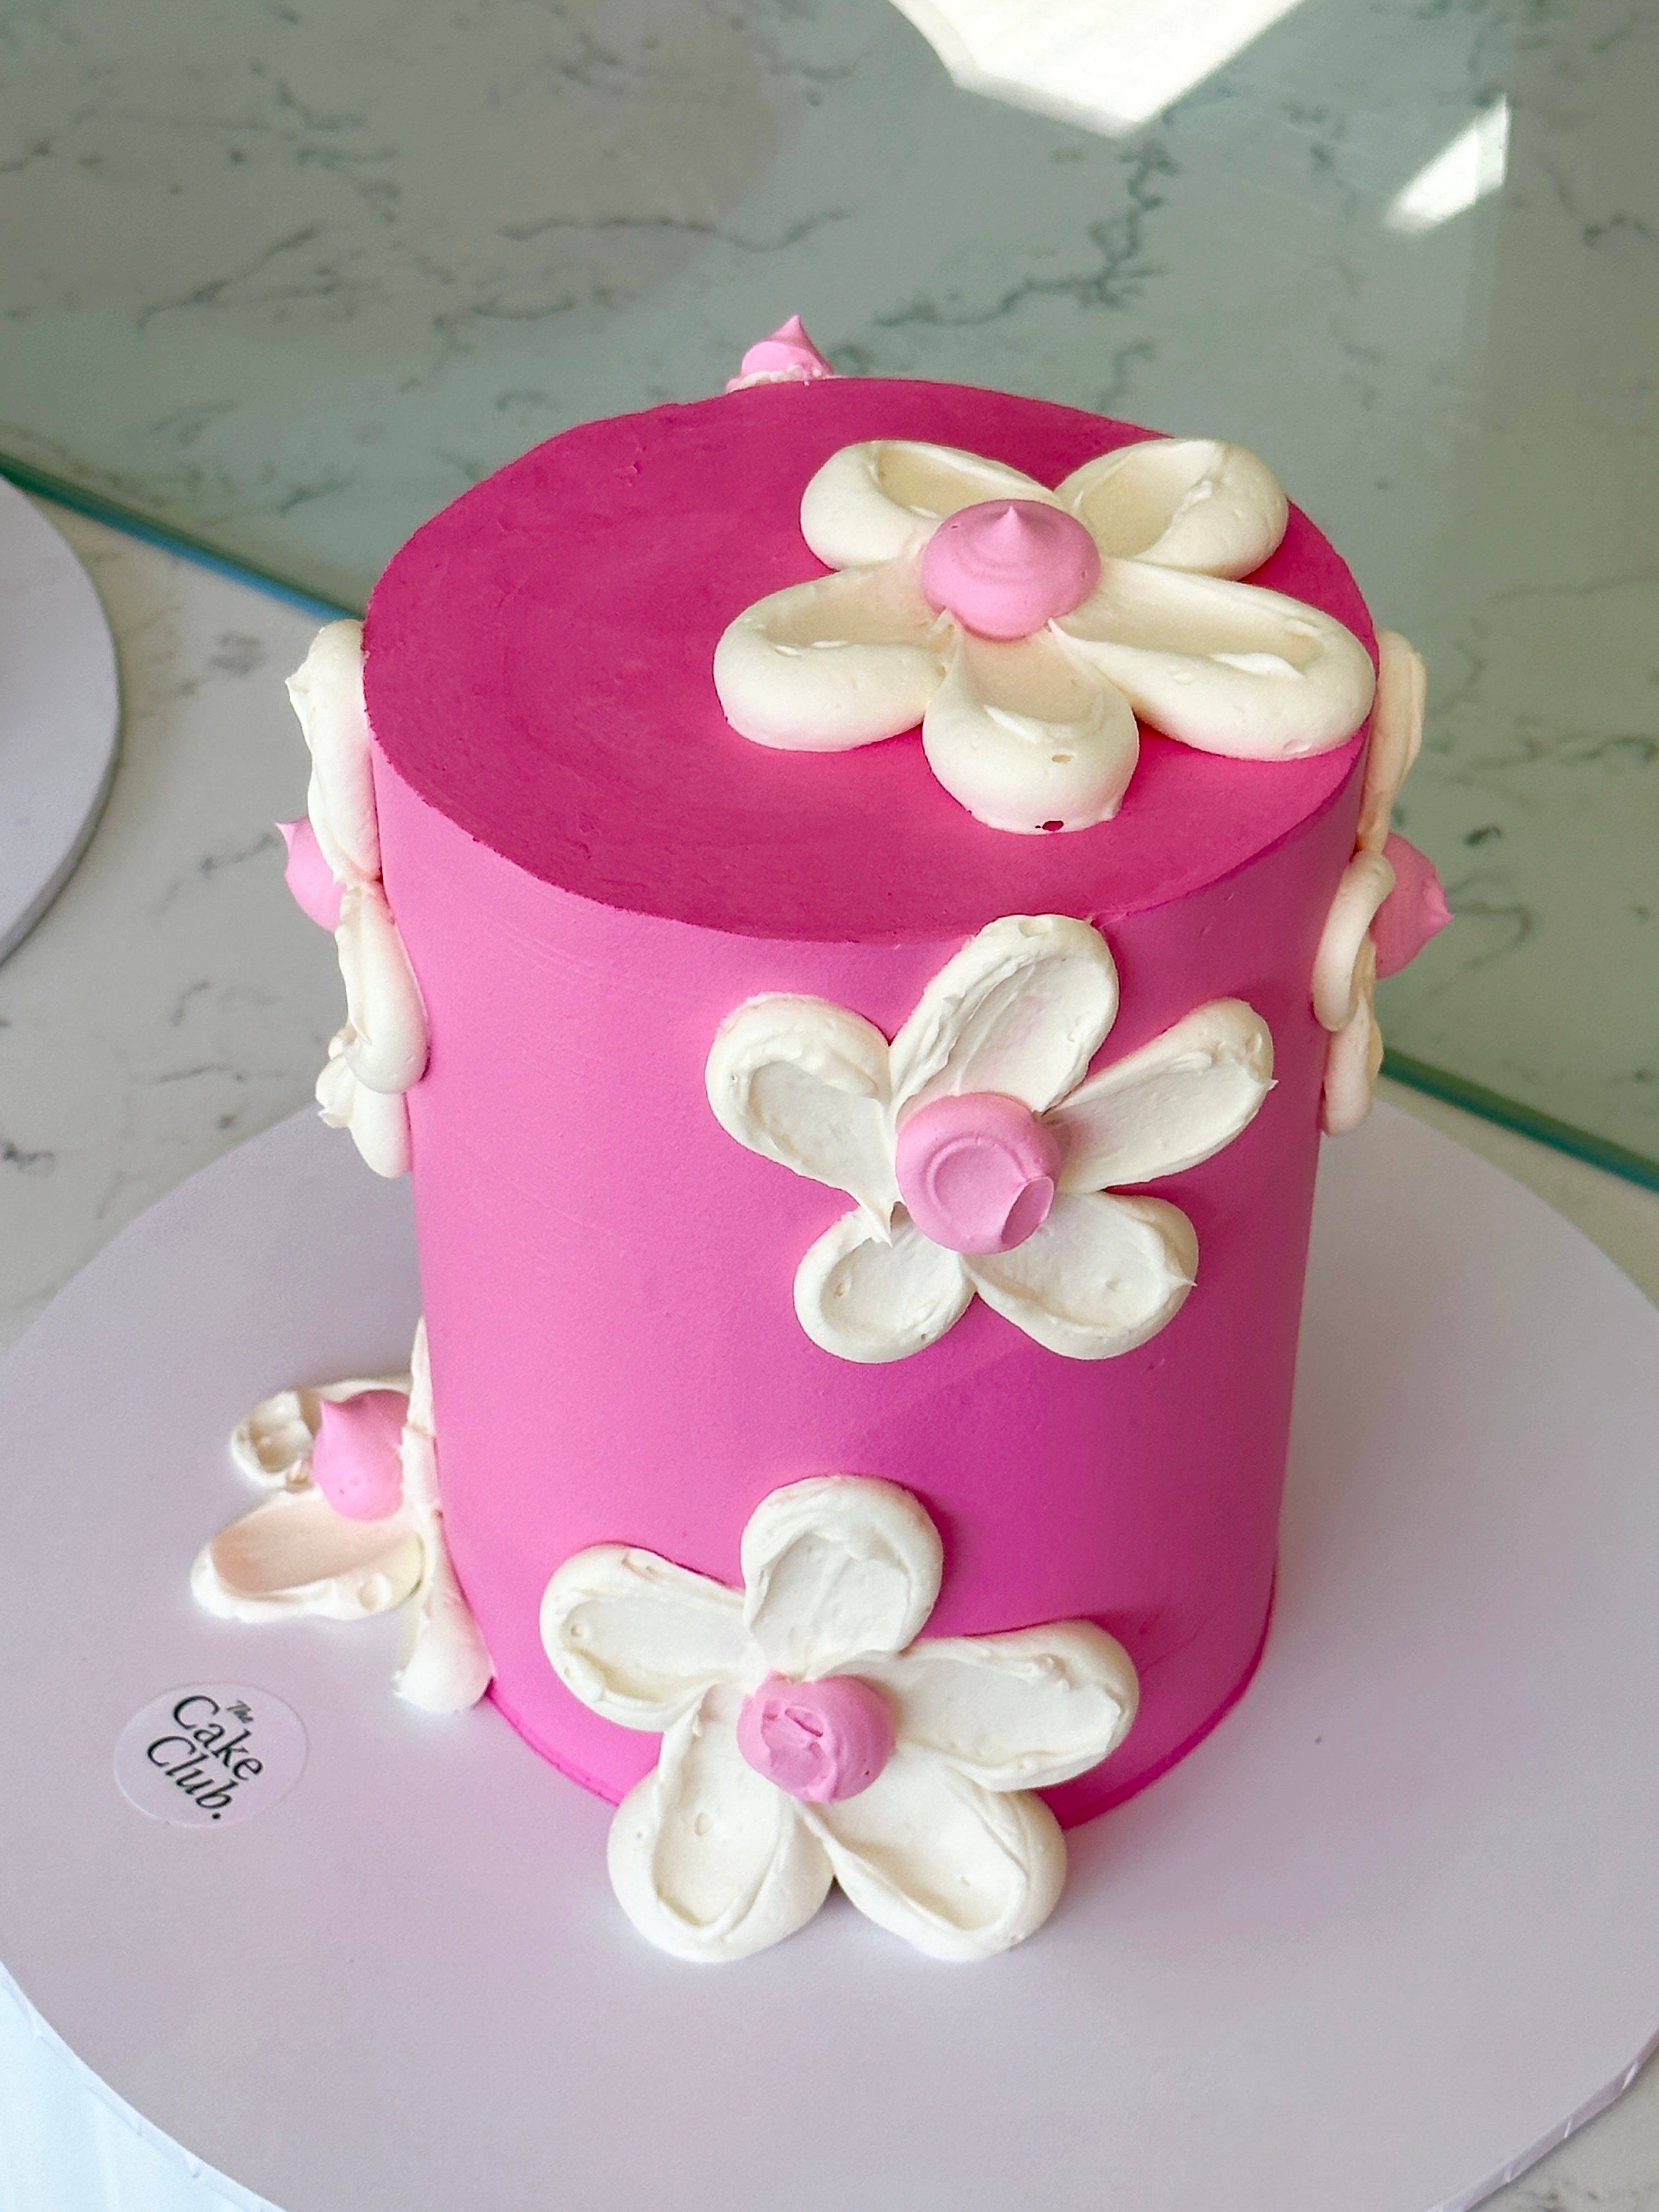 Daisy Buttercream Cake - Kidd's Cakes & Bakery